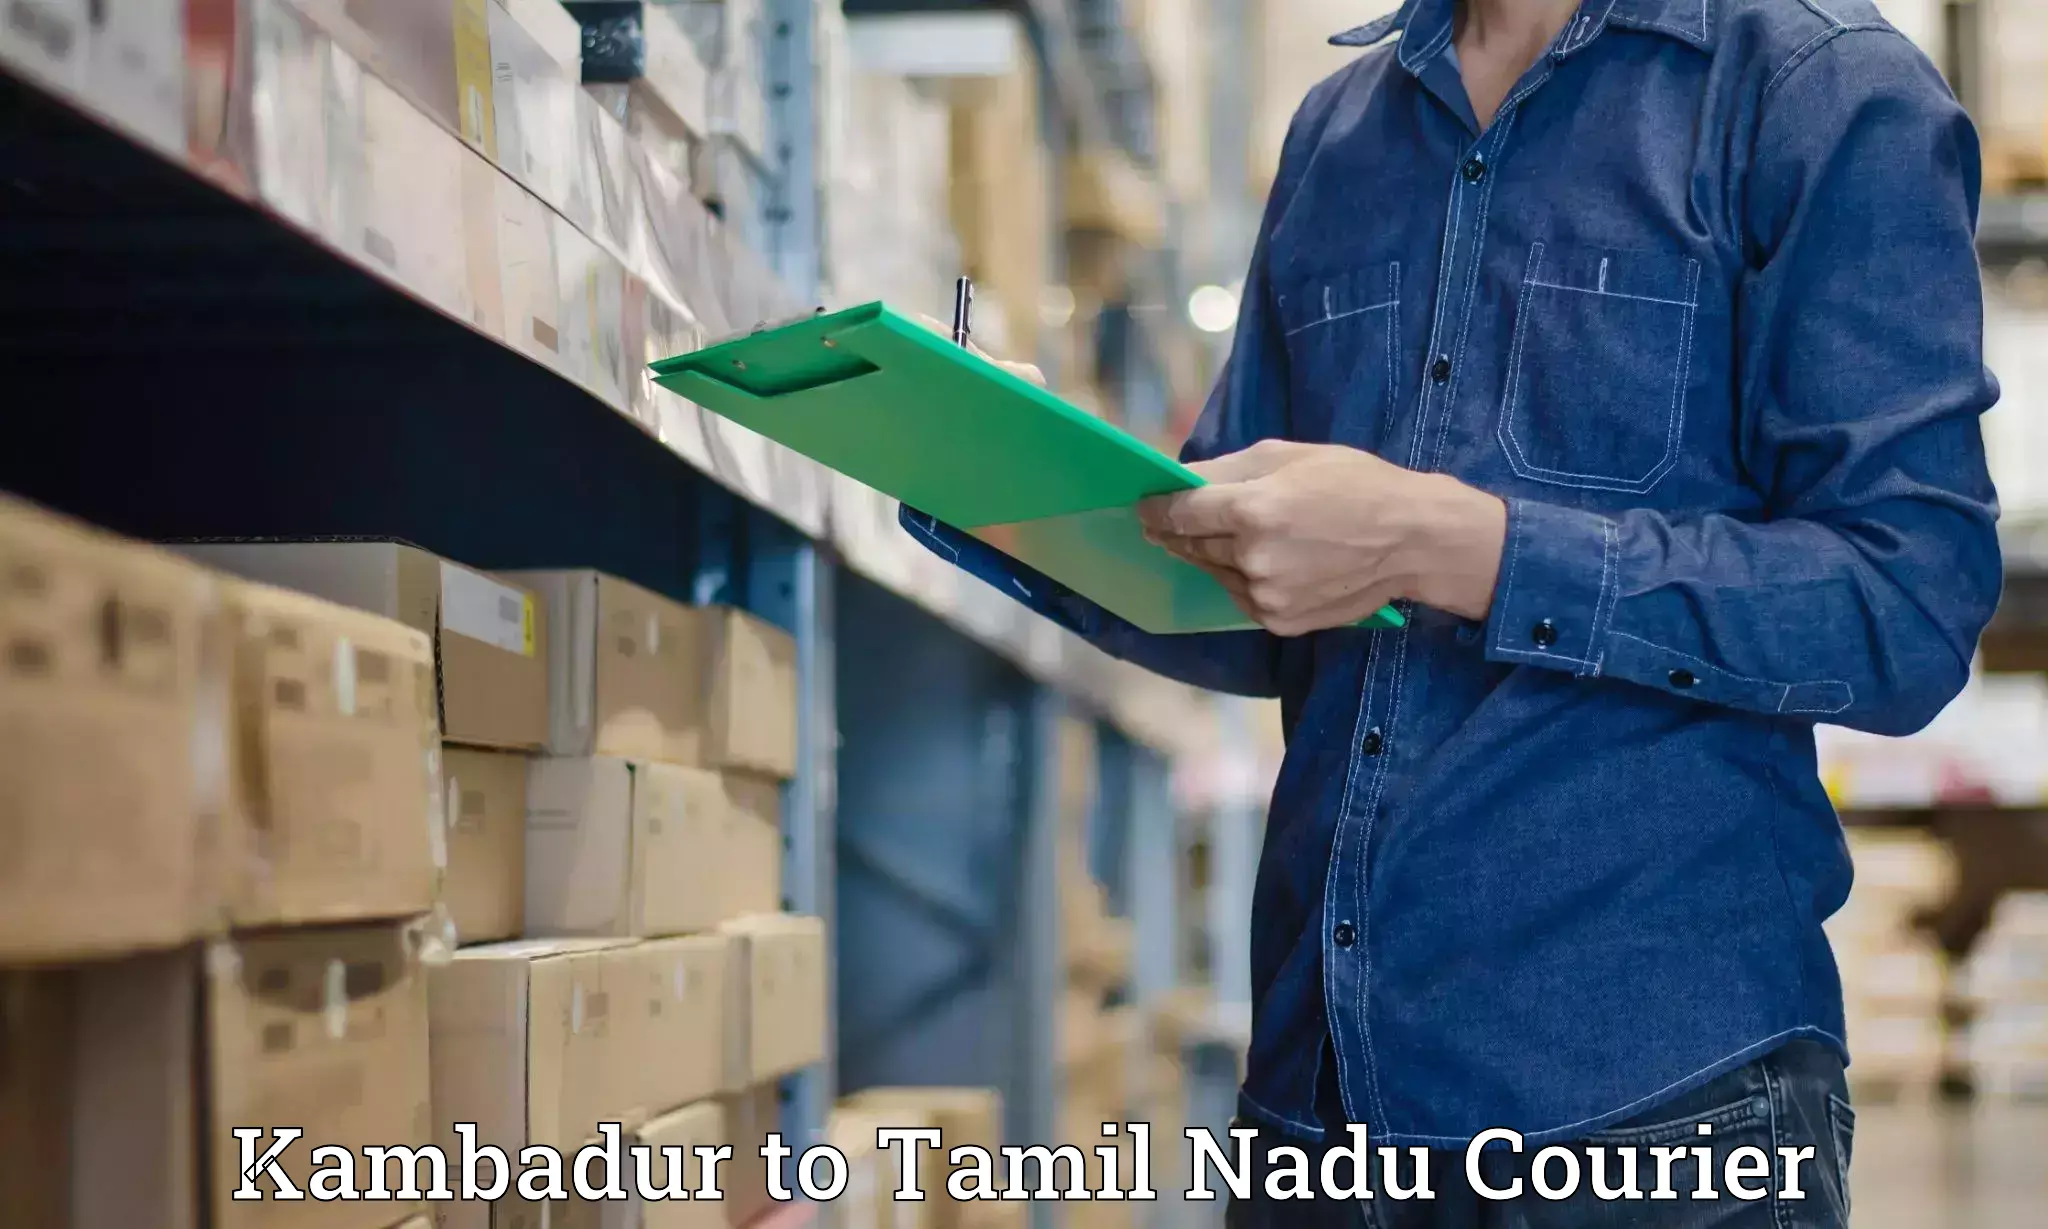 Global logistics network Kambadur to Tamil Nadu